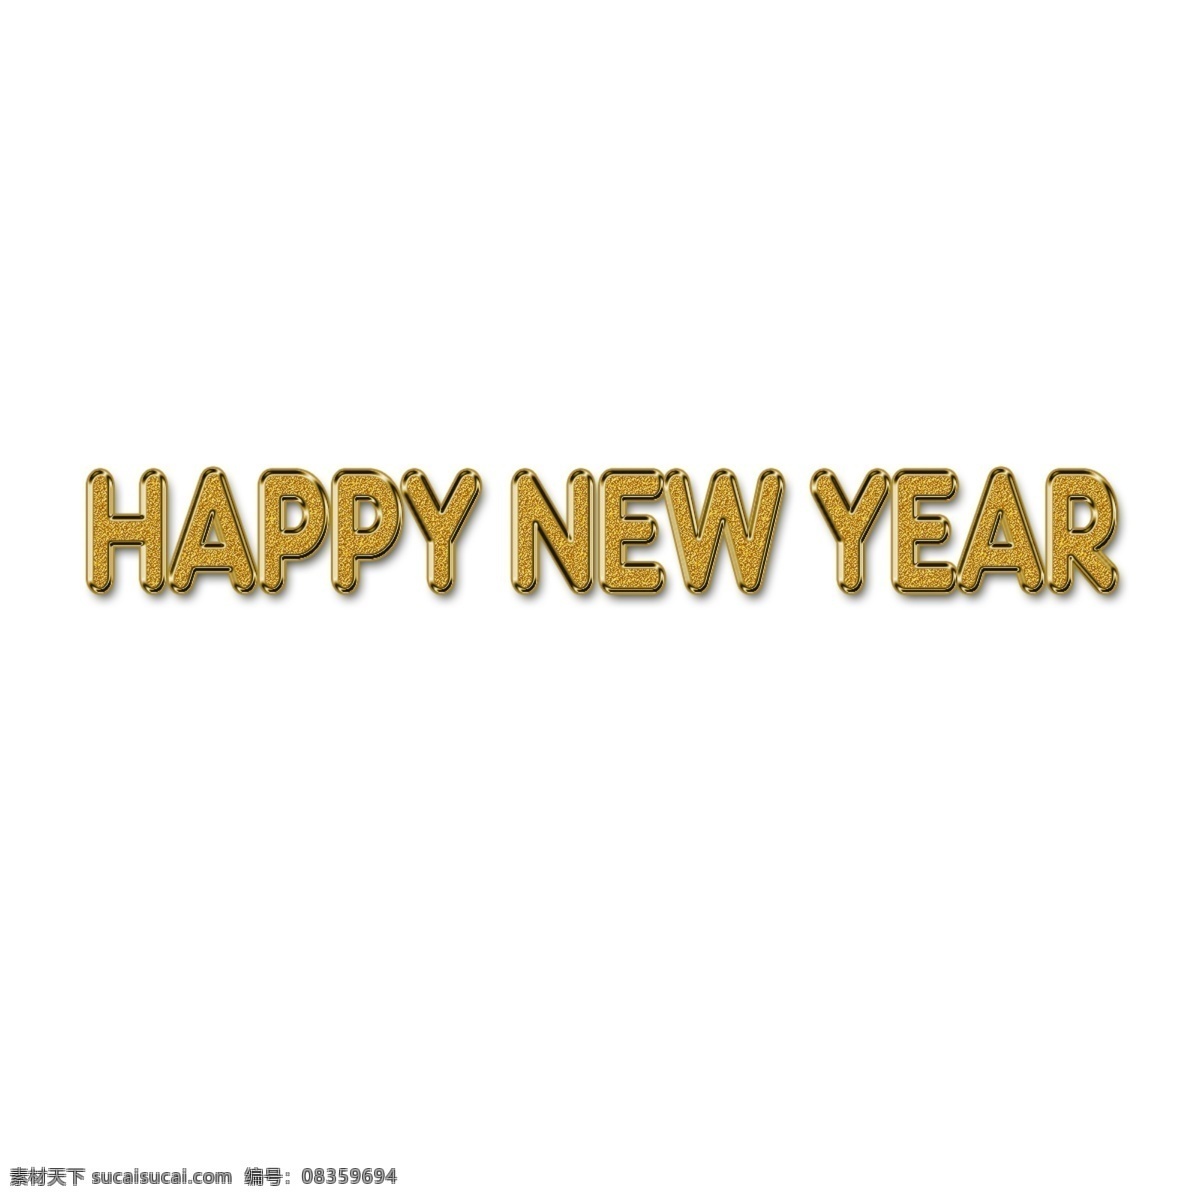 新年 快乐 良好 英语 字母 词 艺术 元素 happy 电影节 纽约 构成 要素 透明 巴布亚新几内亚 word illustrati 条